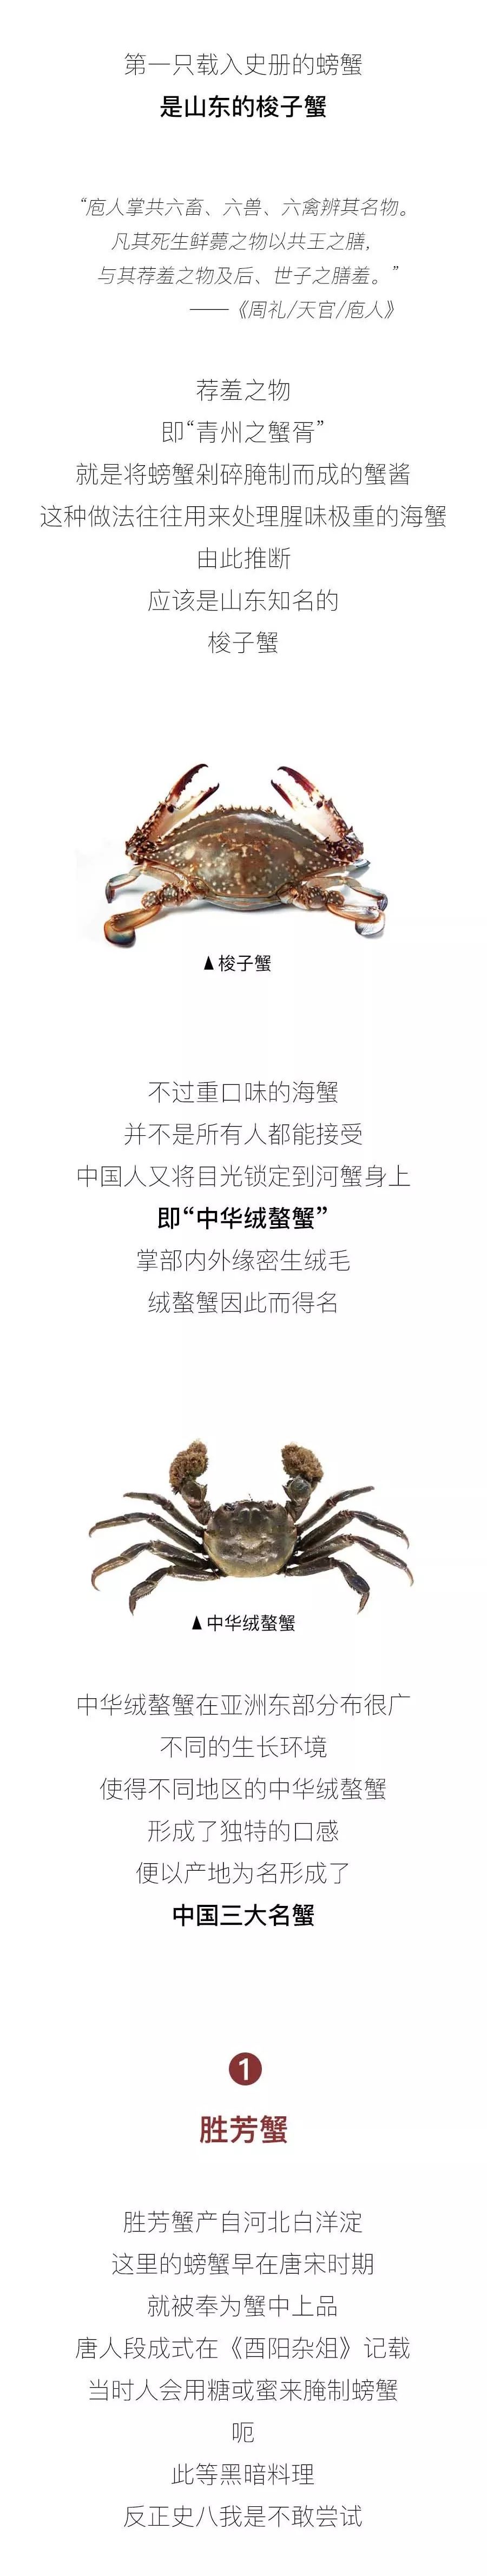 中国三大名蟹 阳澄湖大闸蟹只排最后 食蟹